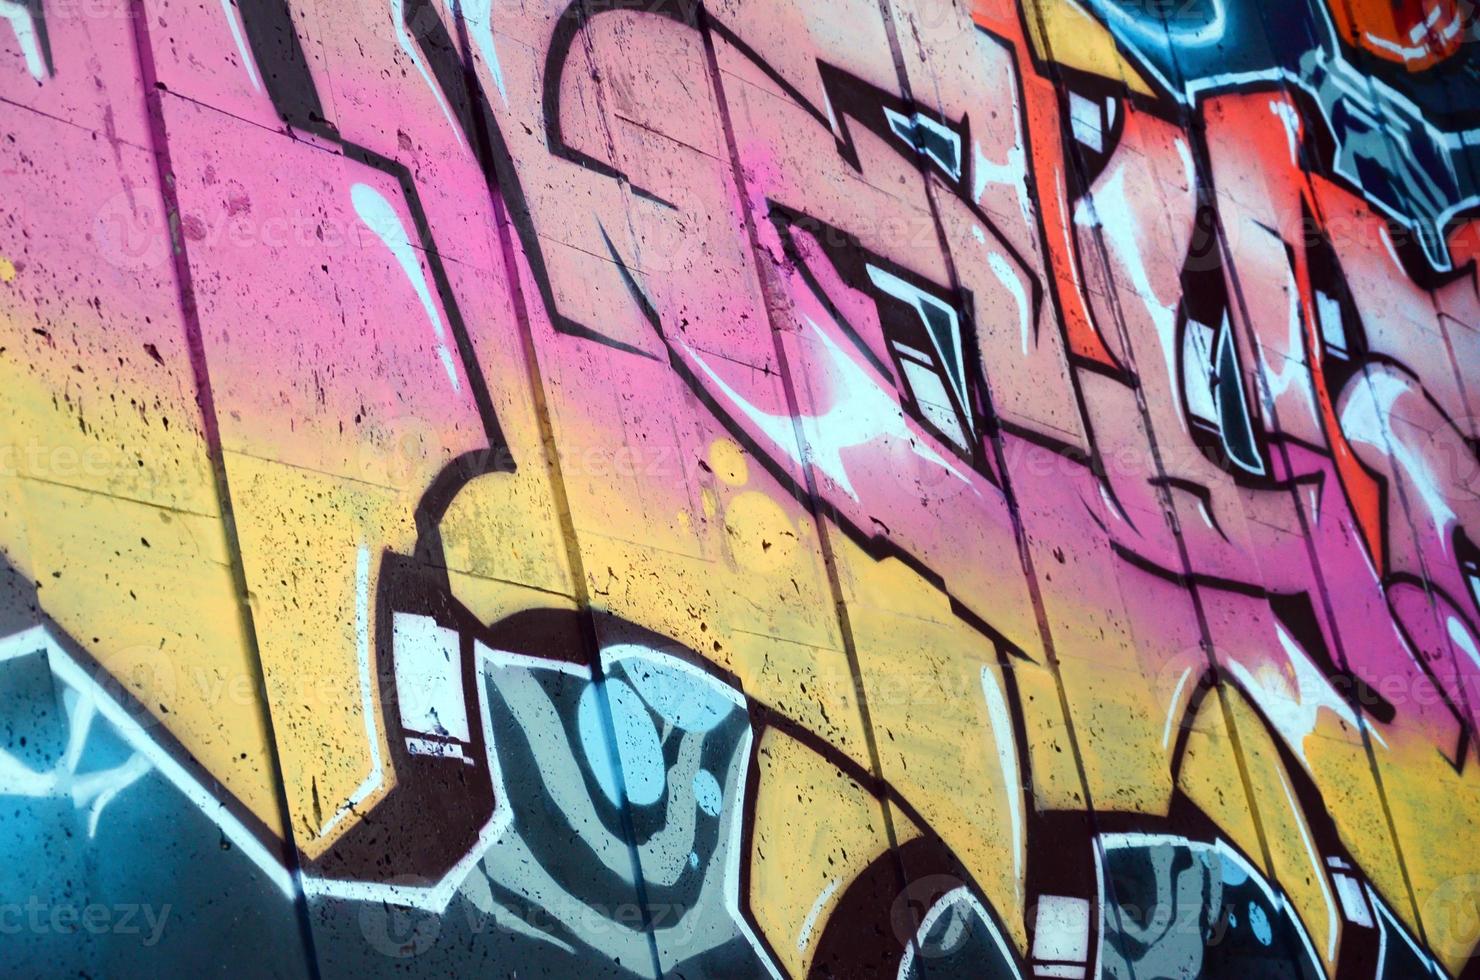 un fragmento de grafiti detallado de un dibujo realizado con pinturas en aerosol sobre una pared de baldosas de hormigón. imagen de fondo del arte callejero en tonos beige y rosa foto